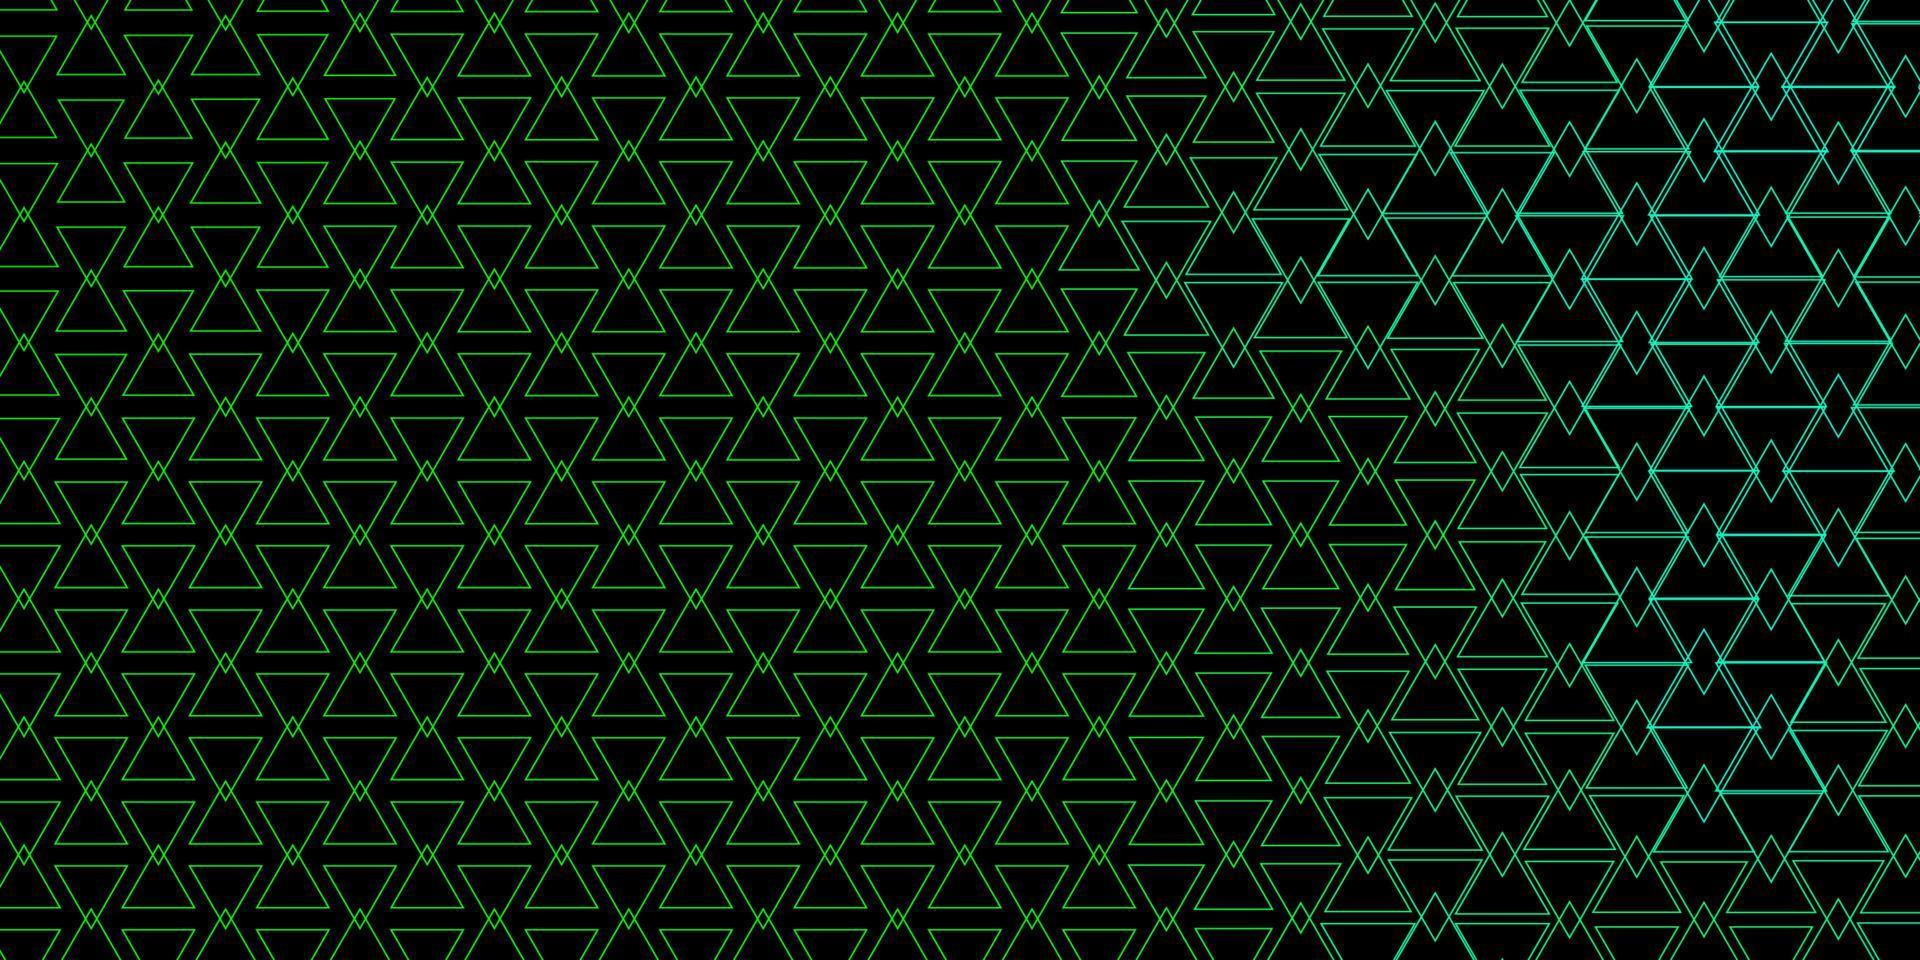 sfondo vettoriale verde scuro con linee, triangoli.